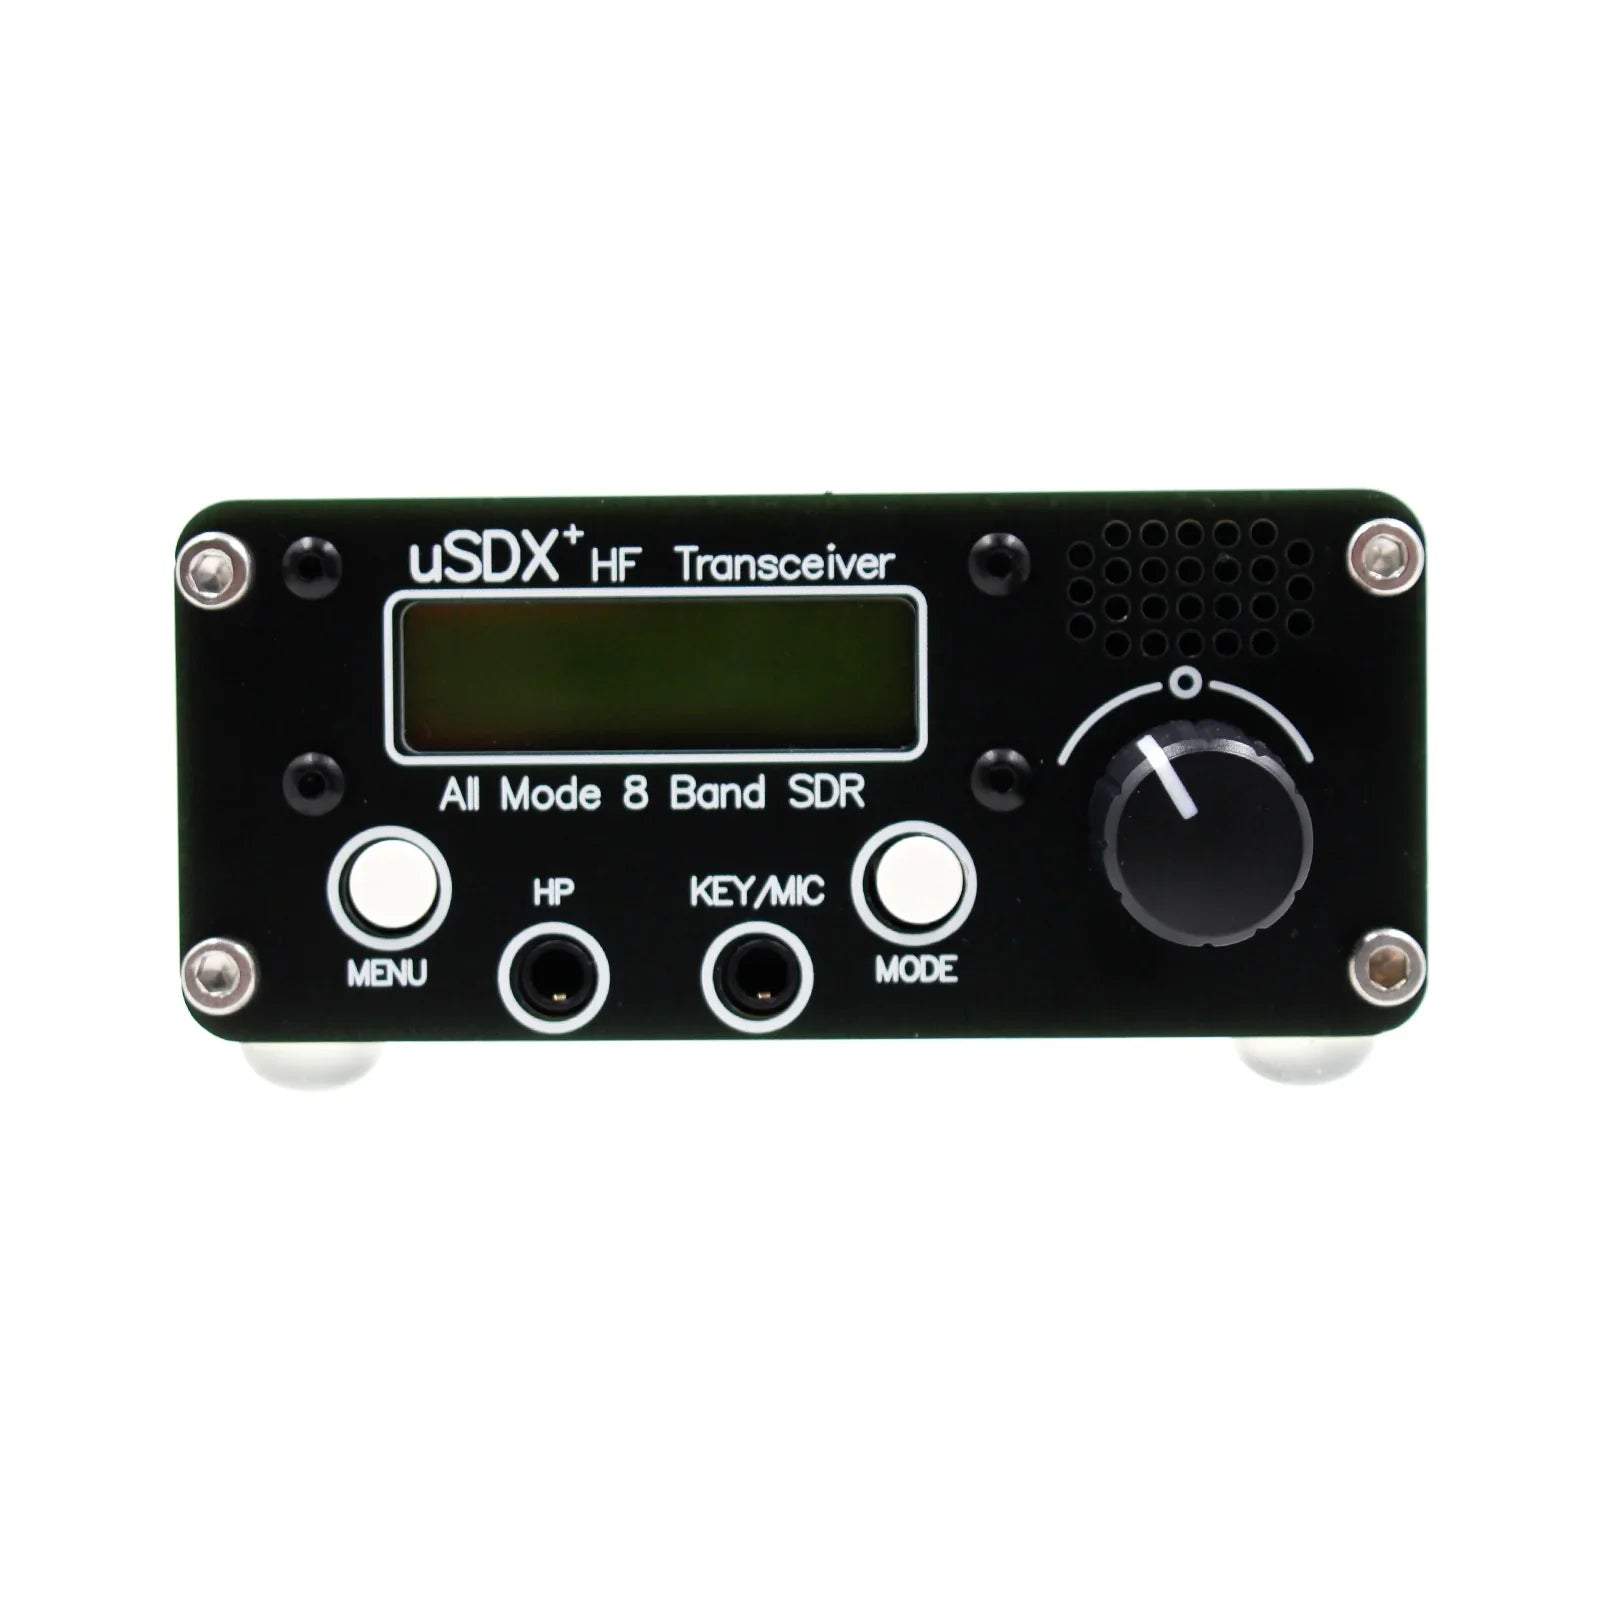 usdr usdx + Plus Transceptor Todos los modos Radio HF de 8 bandas con adaptador de corriente Enchufe de EE. UU. 